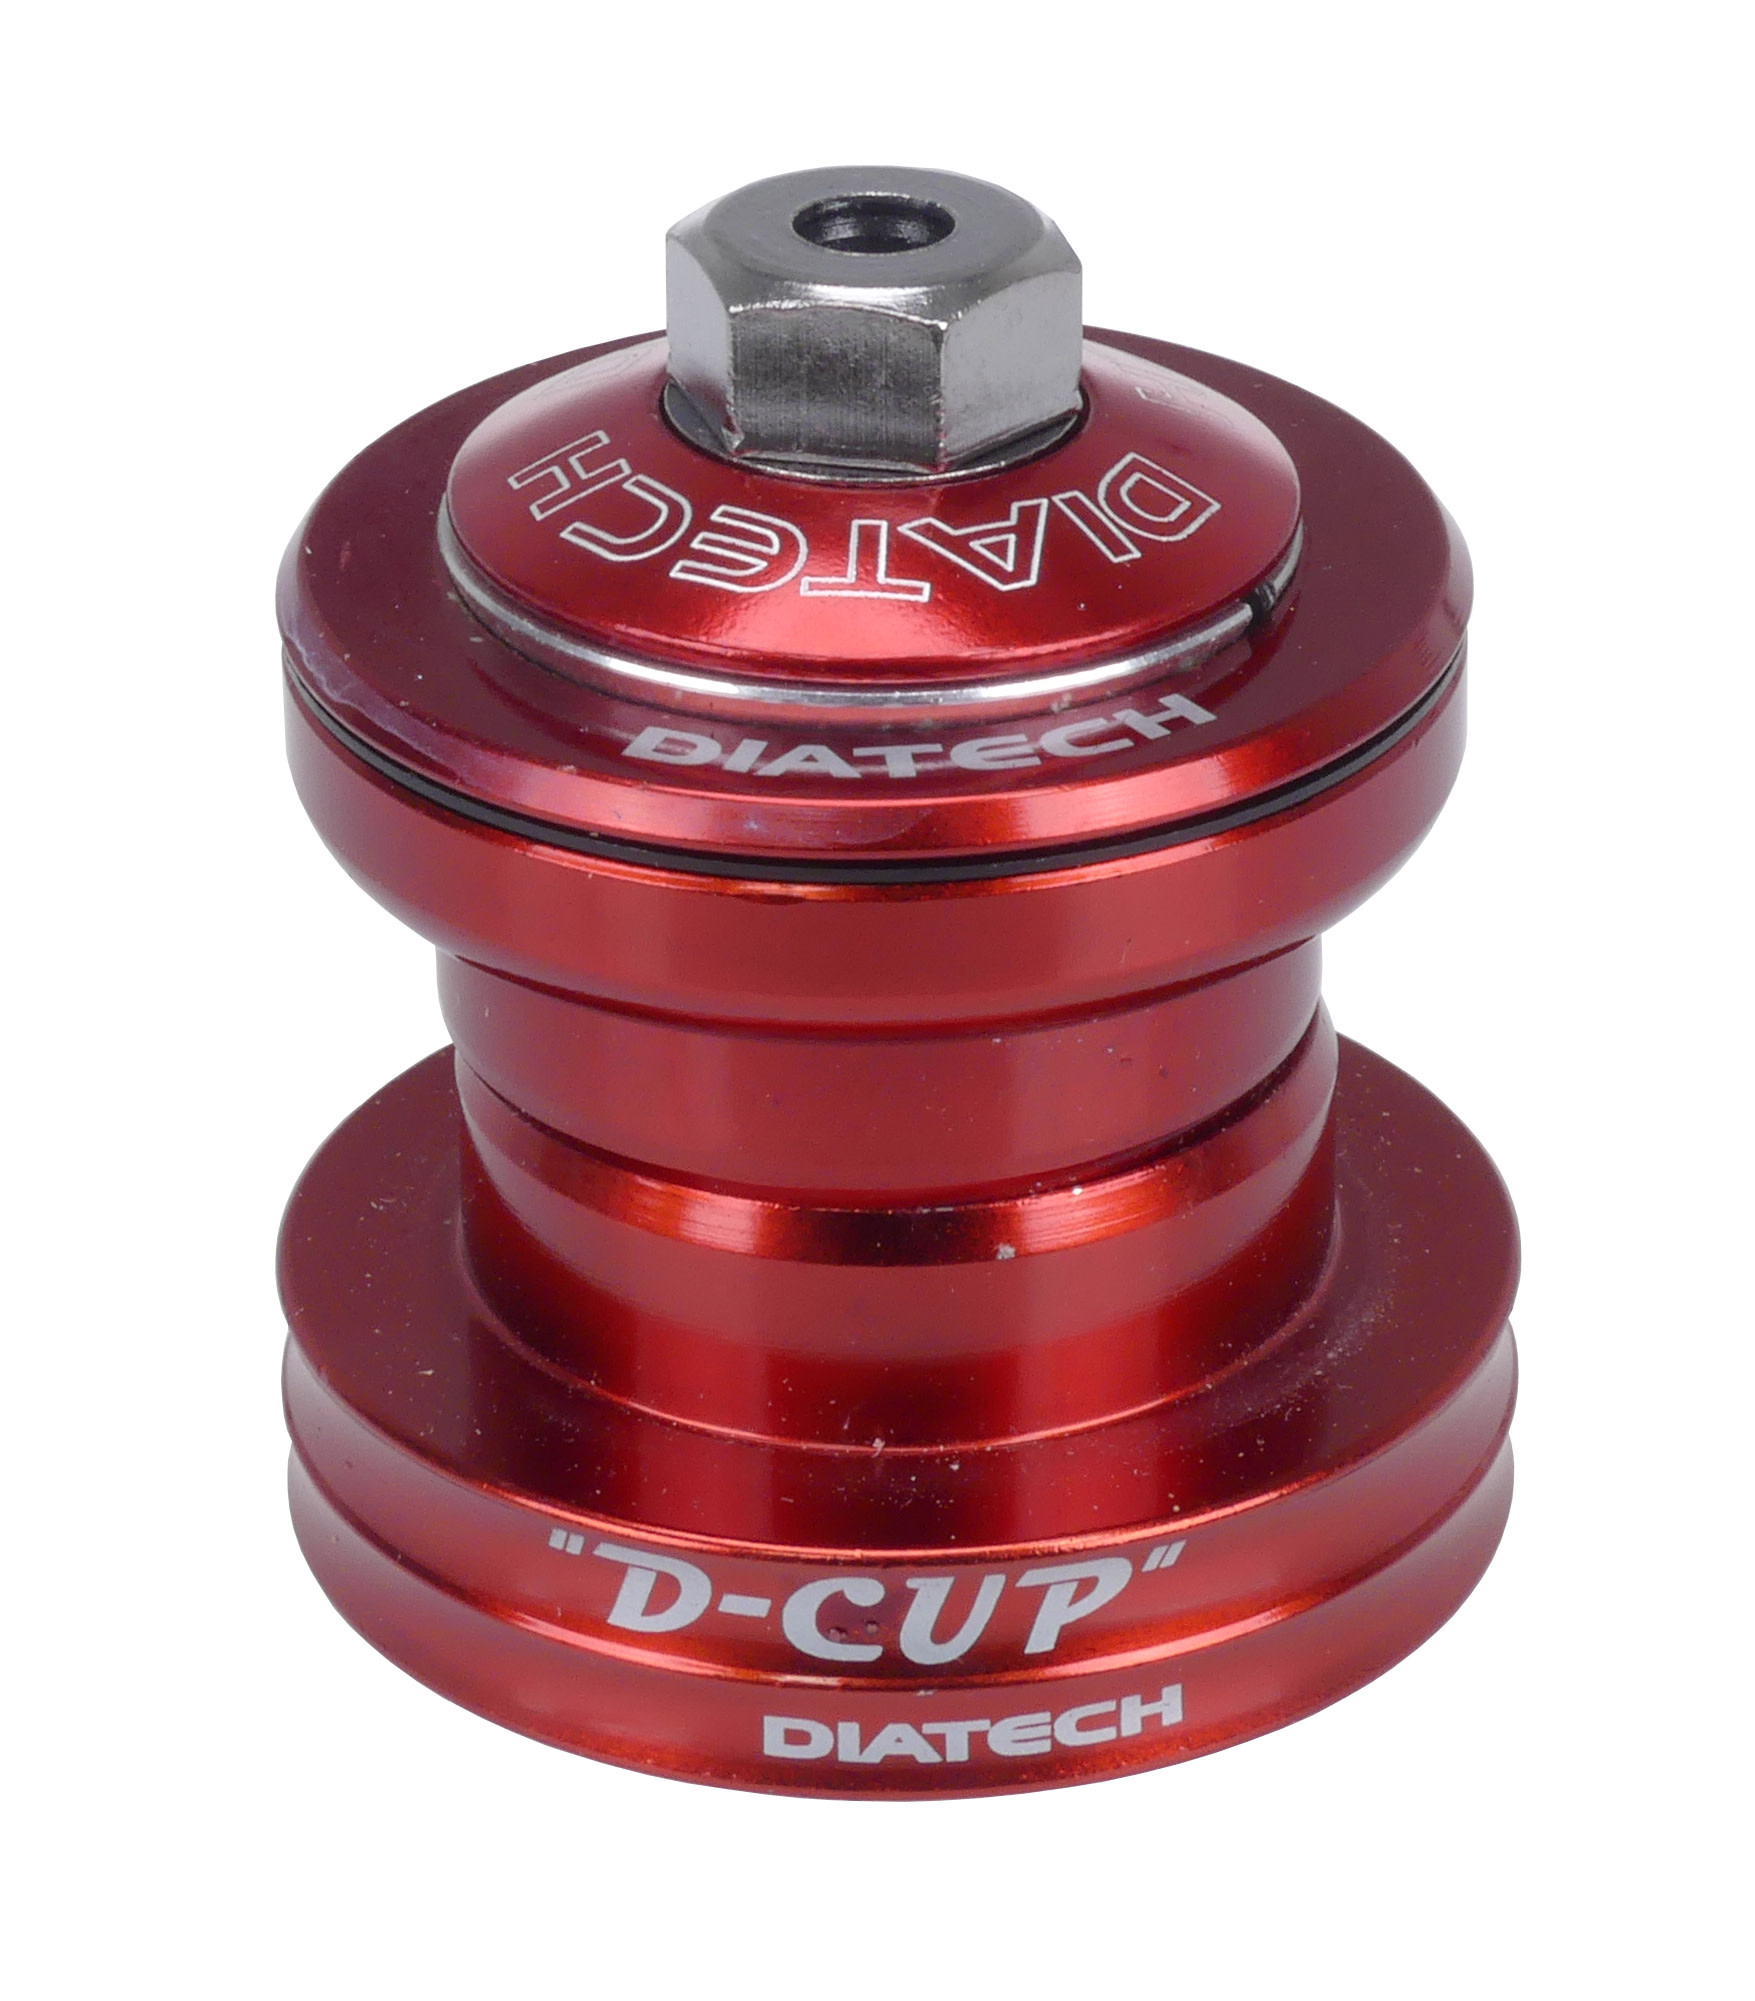 Diatech D-1 FS D-Cup BMX bicycle headset 1 1/8 THREADLESS - RED - Porkchop  BMX